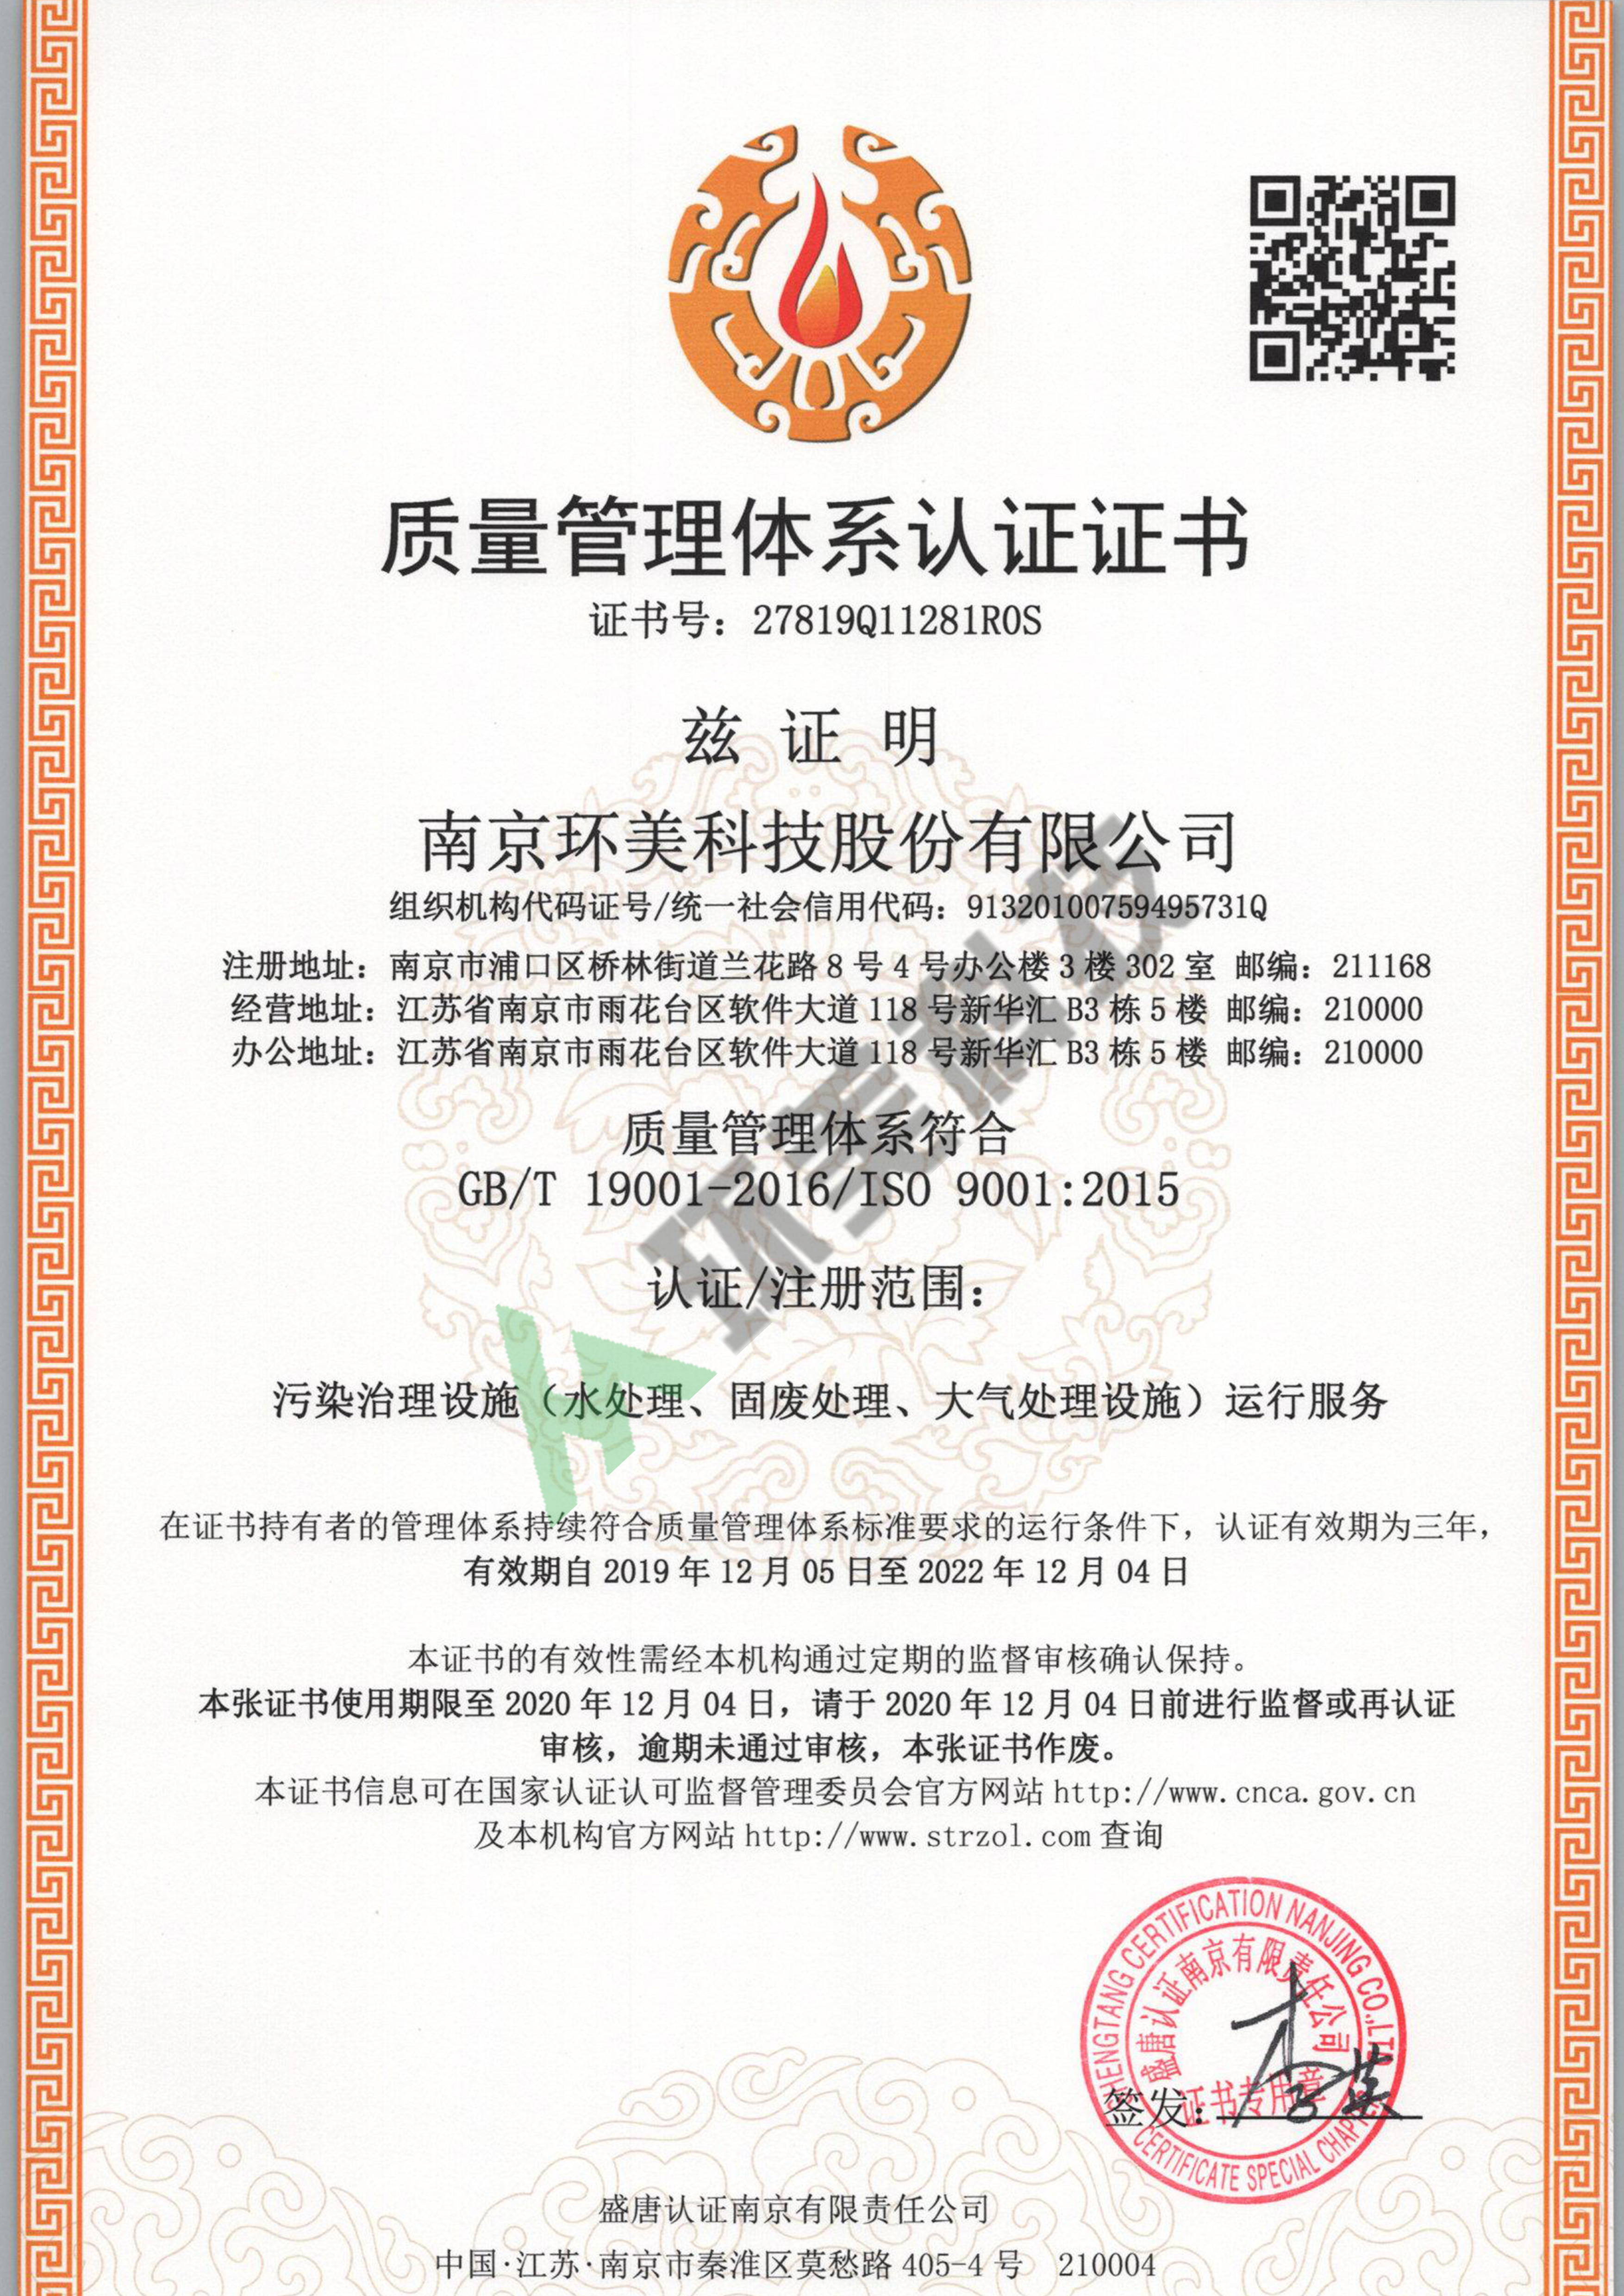 质量管理体系认证证书-ISO9001-污染治理设施运行服务